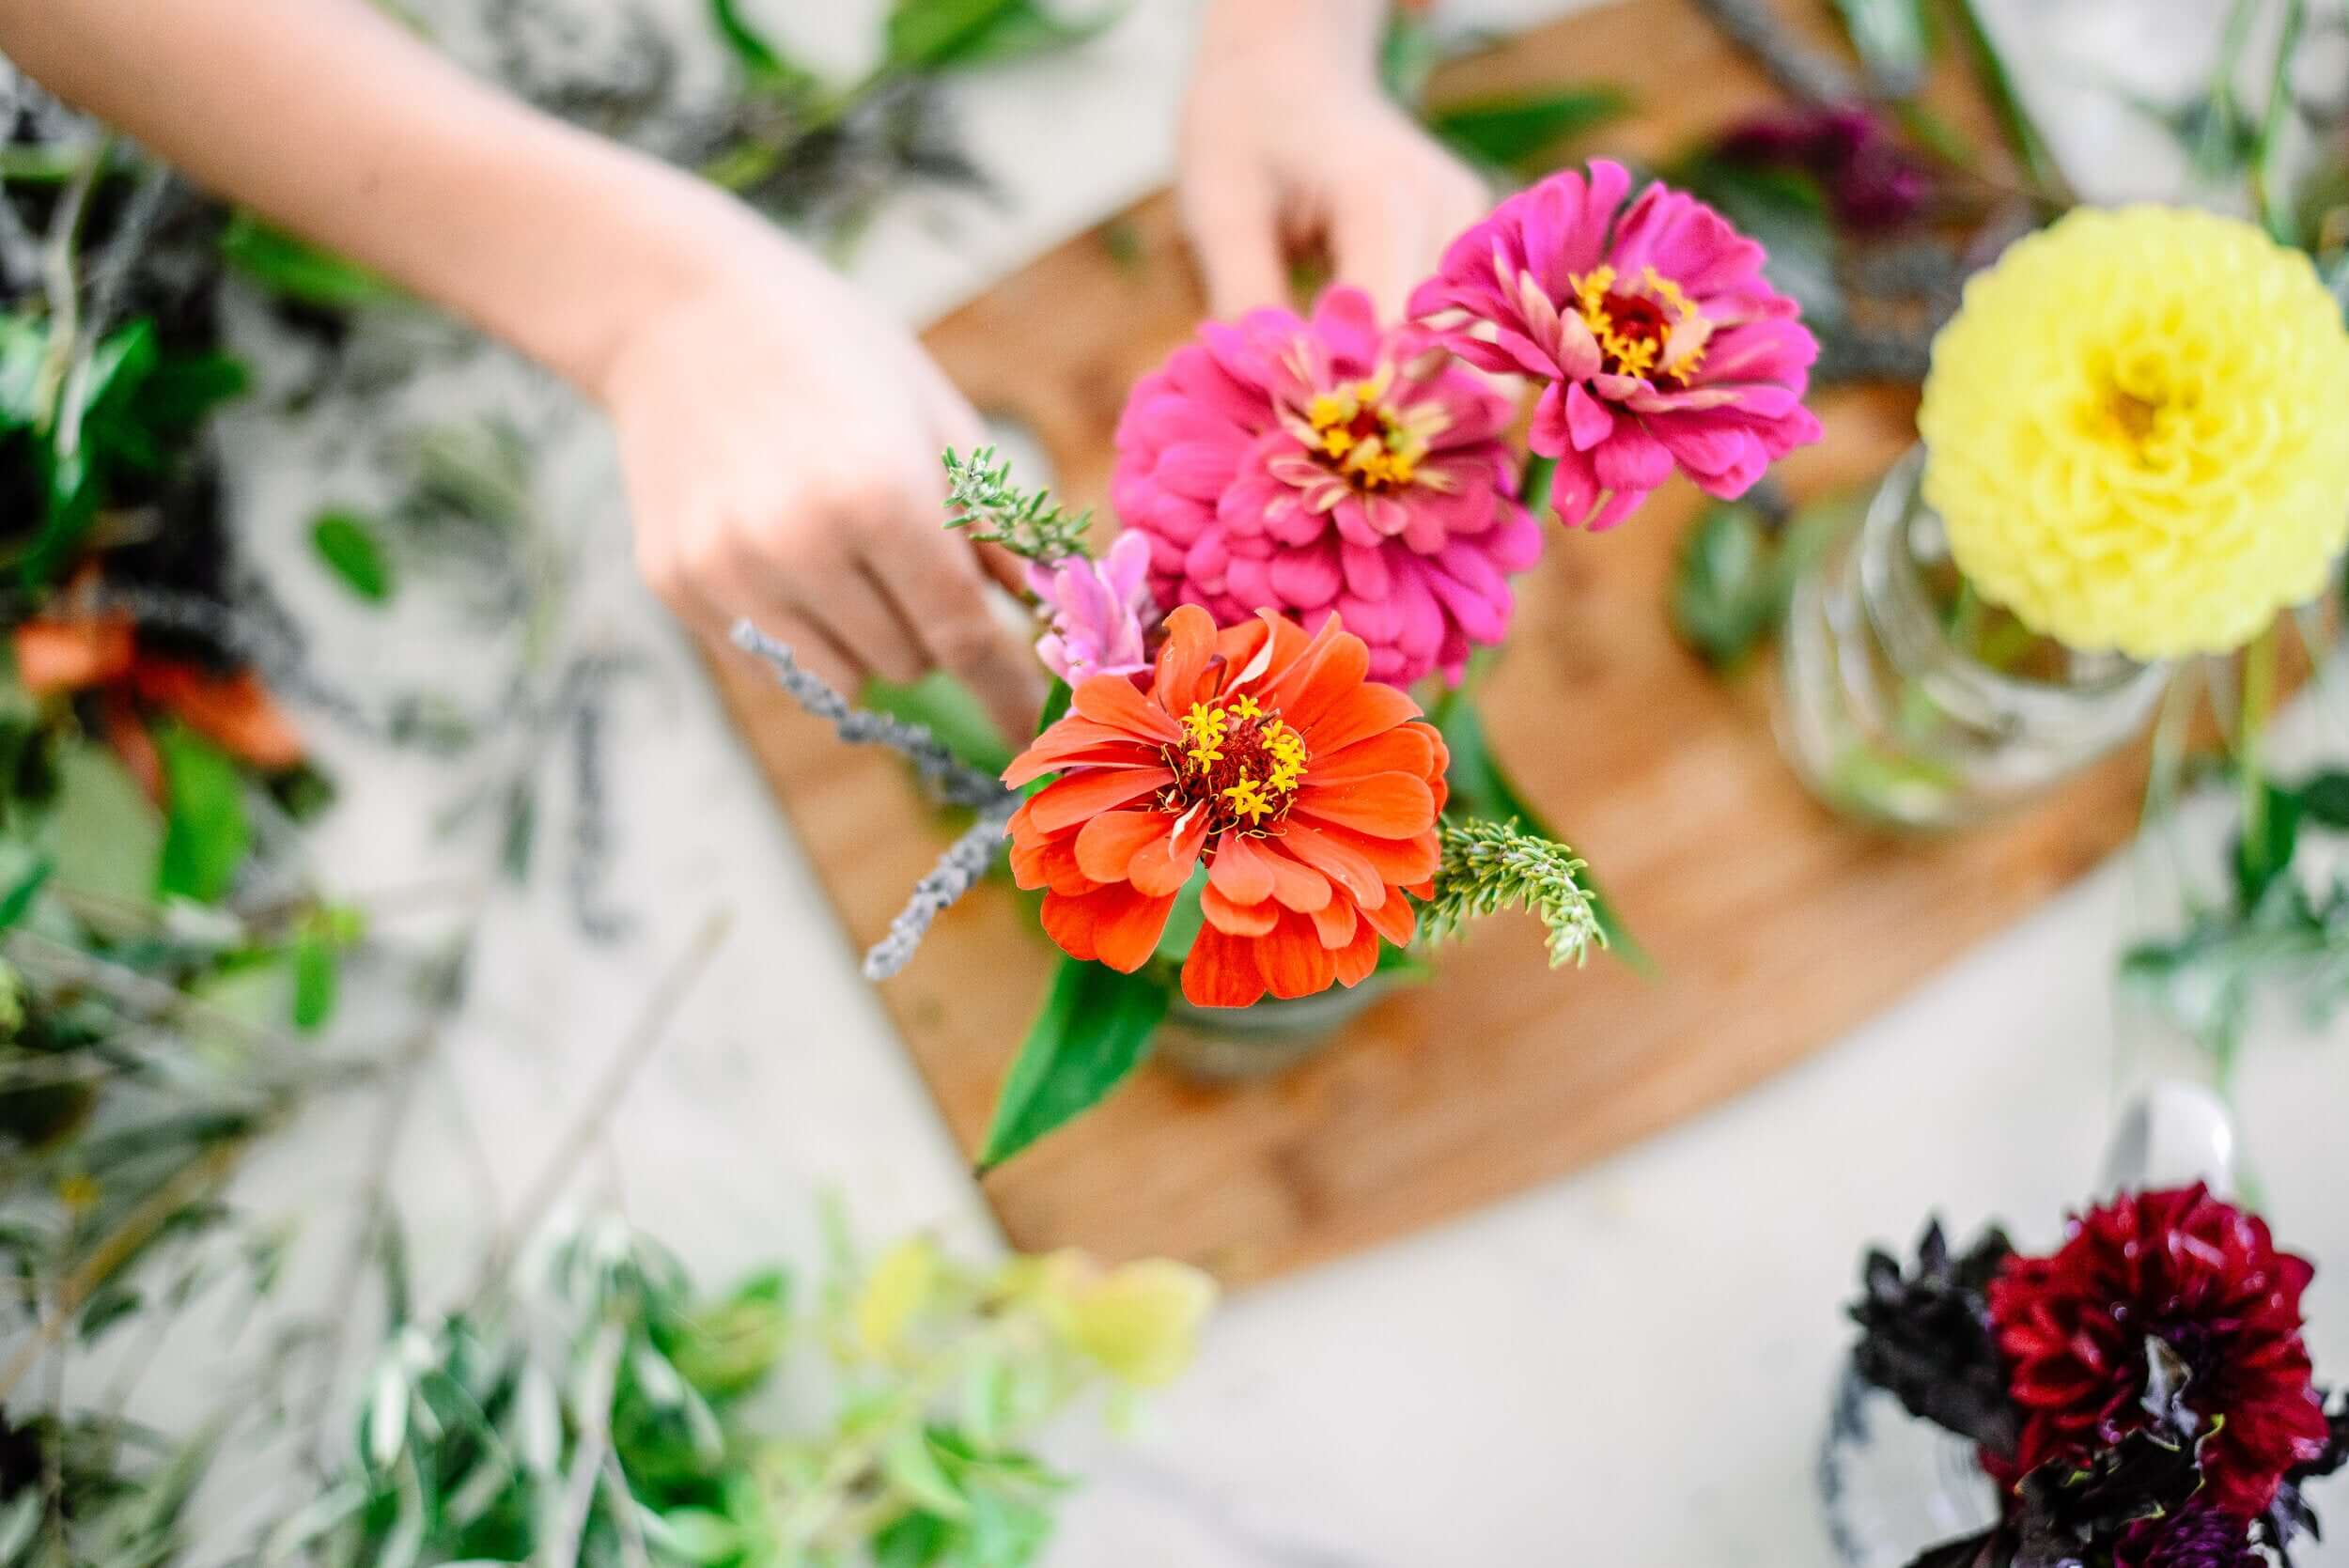 A homeschooler's hands arranging wild flowers in a vase.